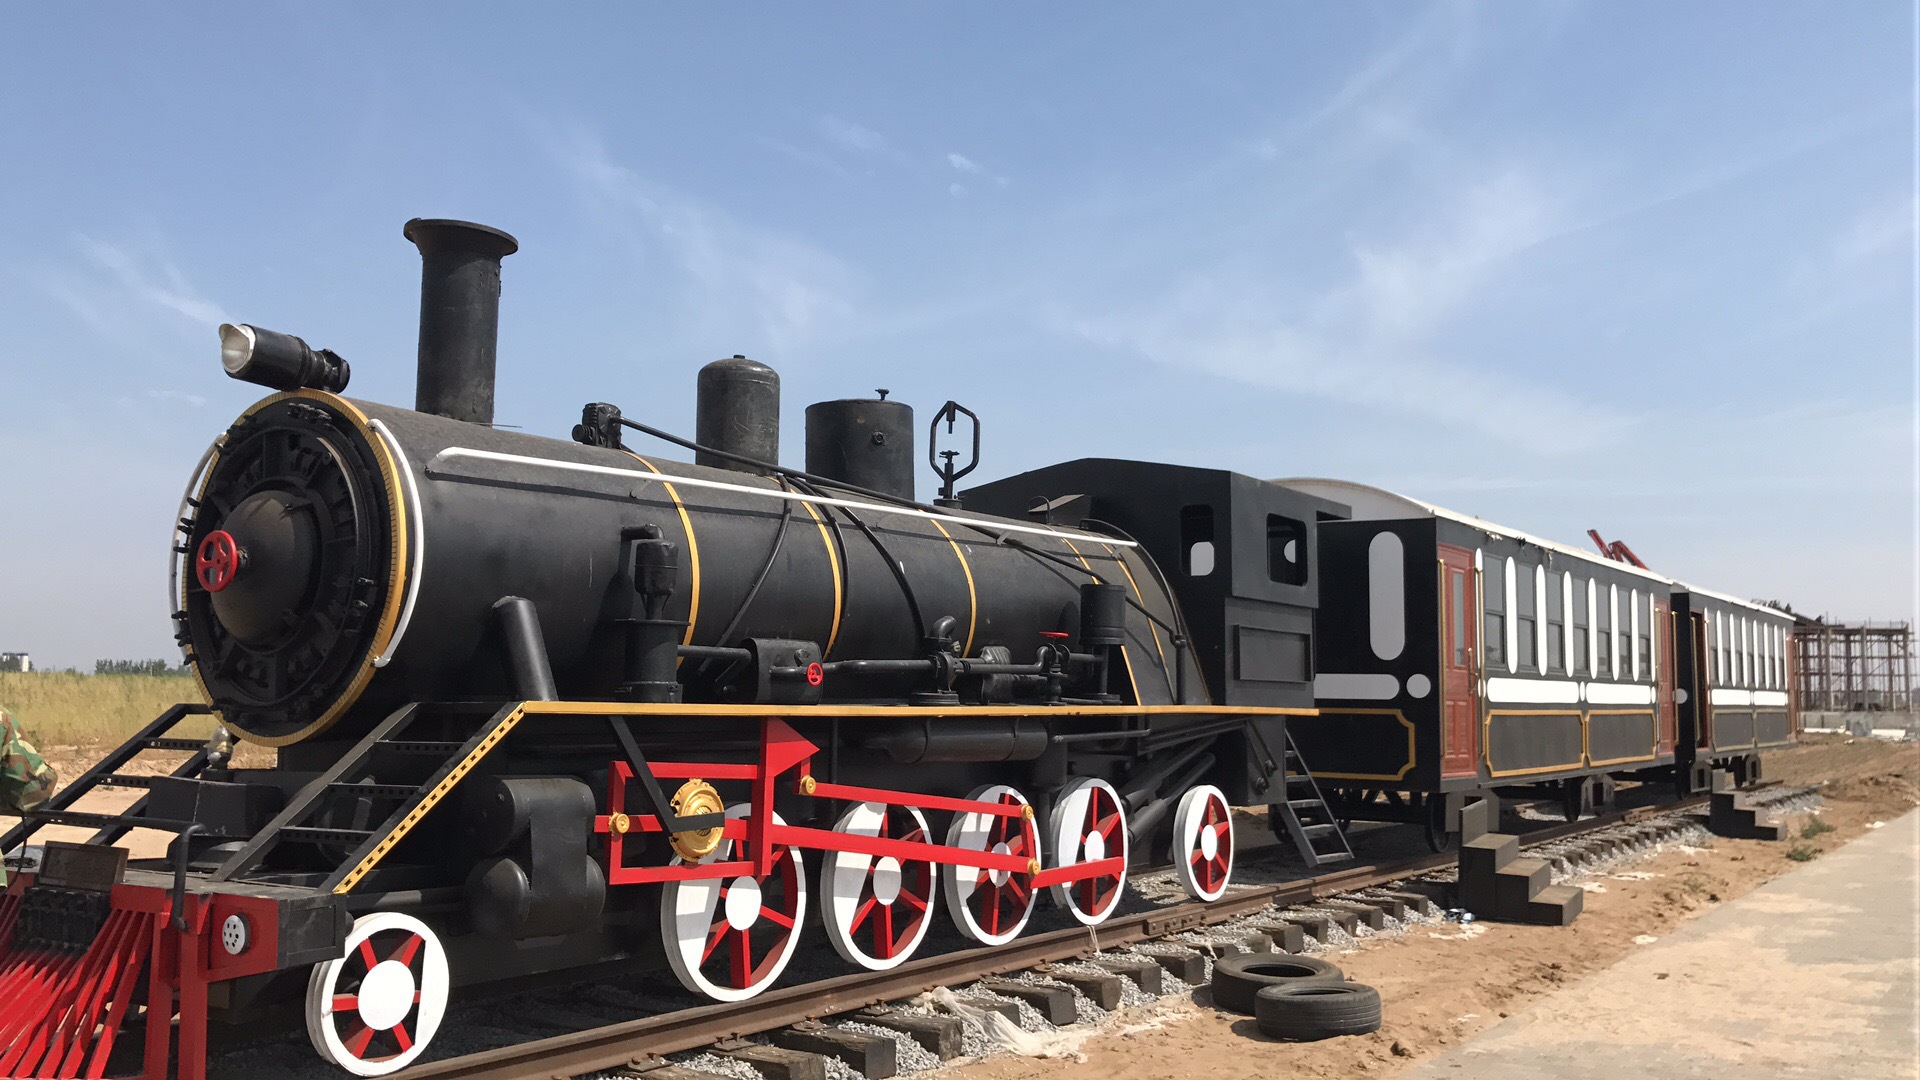 定制金属铁艺模型摆件装饰道具铁皮仿真大型复古怀旧蒸汽火车头